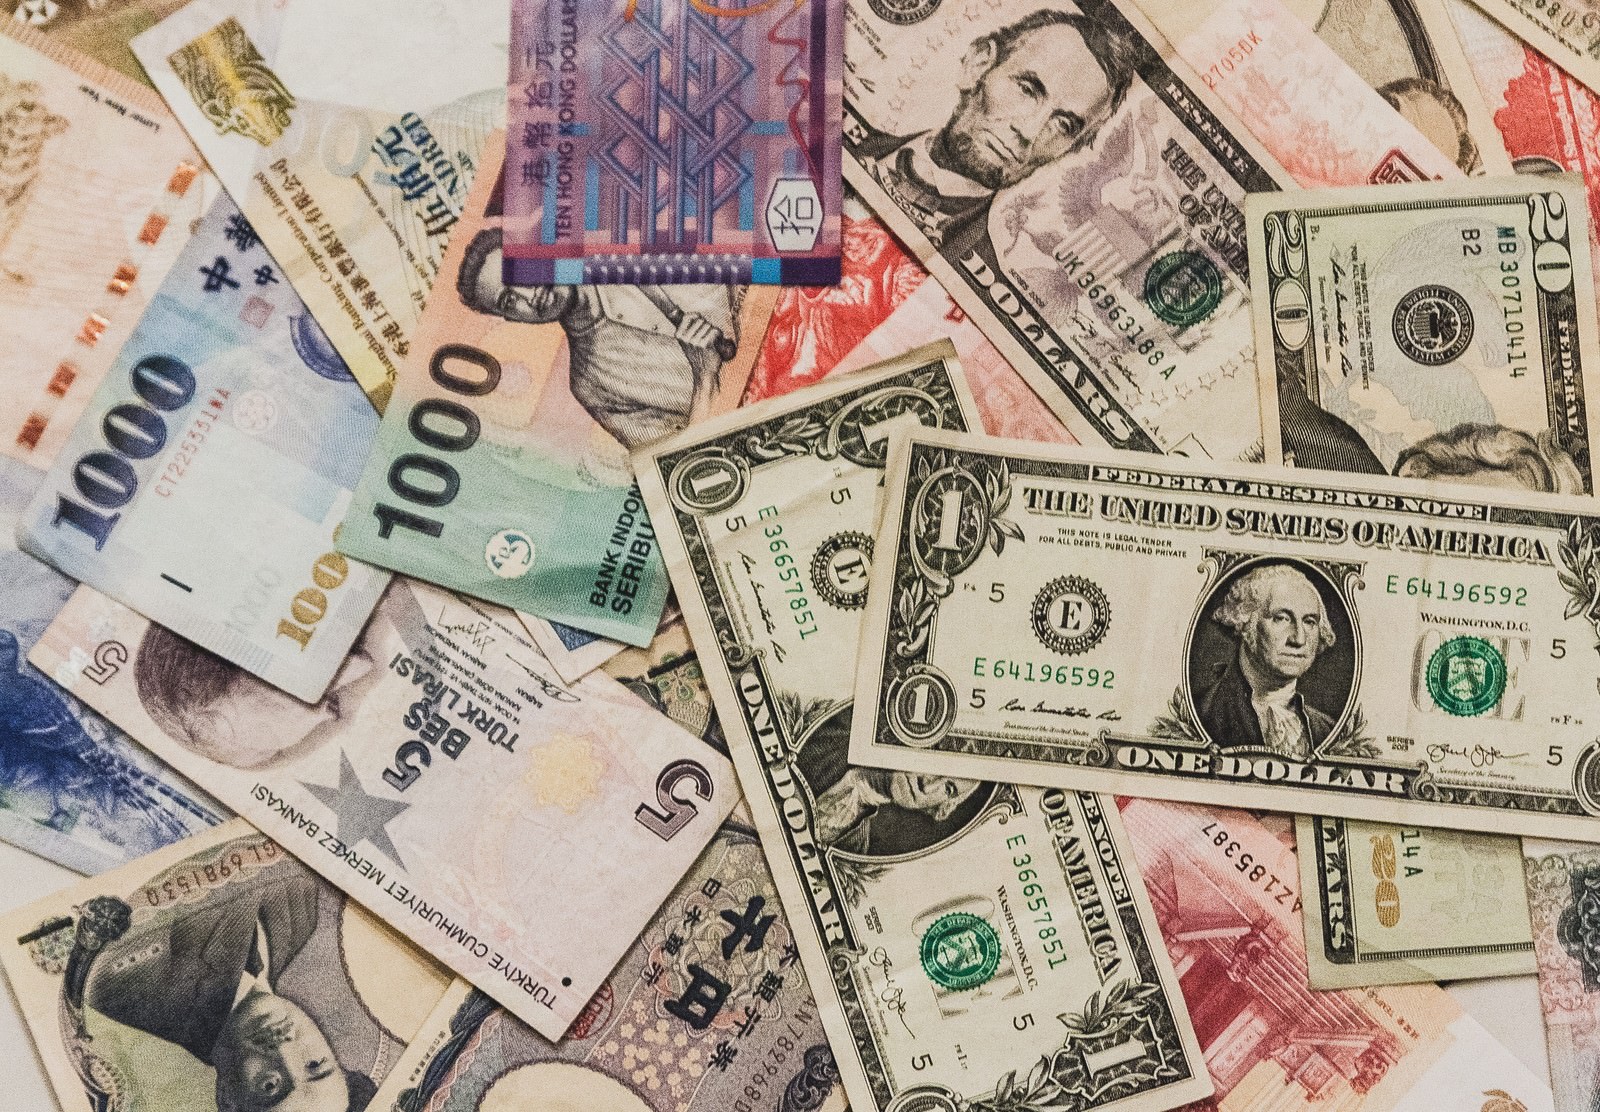 「散らばった海外の紙幣散らばった海外の紙幣」のフリー写真素材